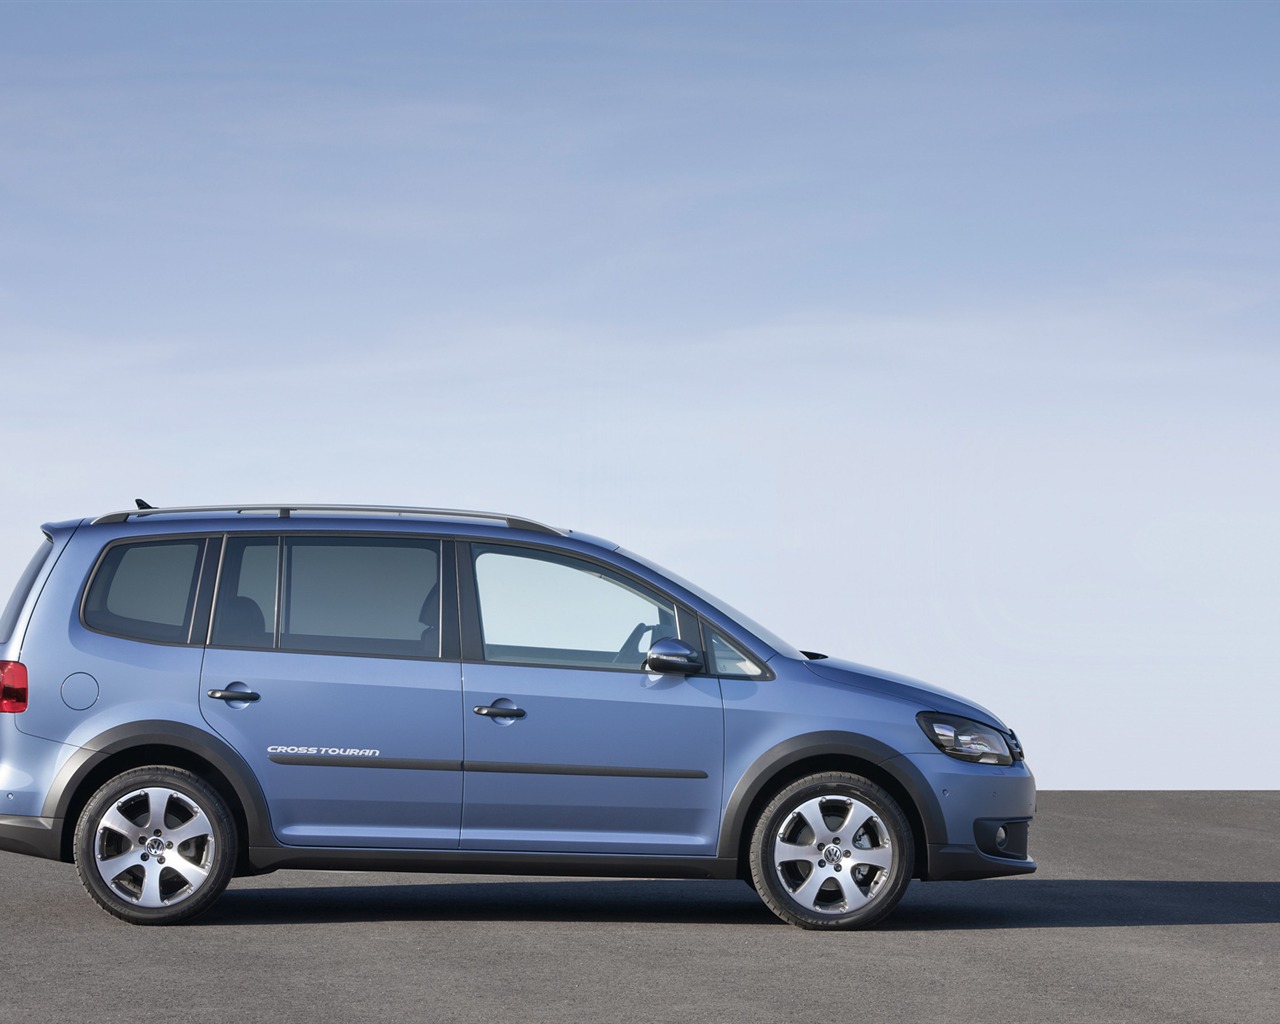 Volkswagen CrossTouran - 2010 fonds d'écran HD #10 - 1280x1024